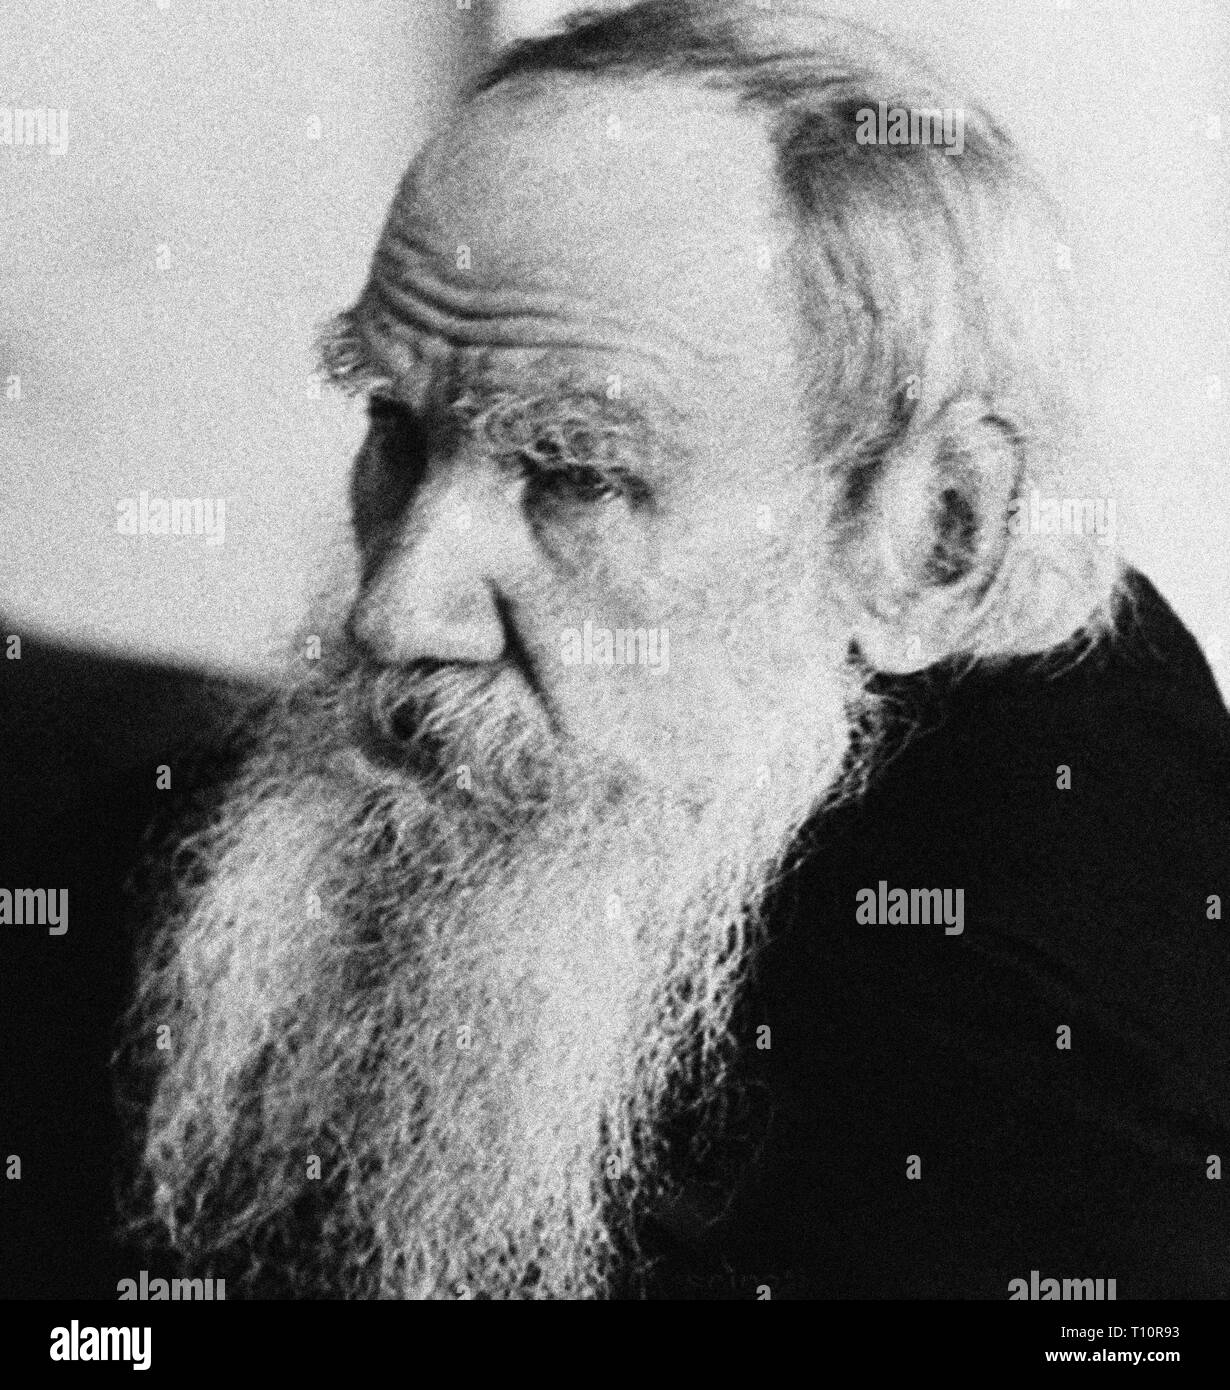 Conte Nikolayevich Lev Tolstoj, solitamente denominati in inglese come Leo Tolstoj è stato uno scrittore russo che è considerato come uno dei più grandi autori di tutti i tempi. Scansionata da materiale di immagine negli archivi della stampa Ritratto - Servizio (ex premere ritratto Bureau). Foto Stock